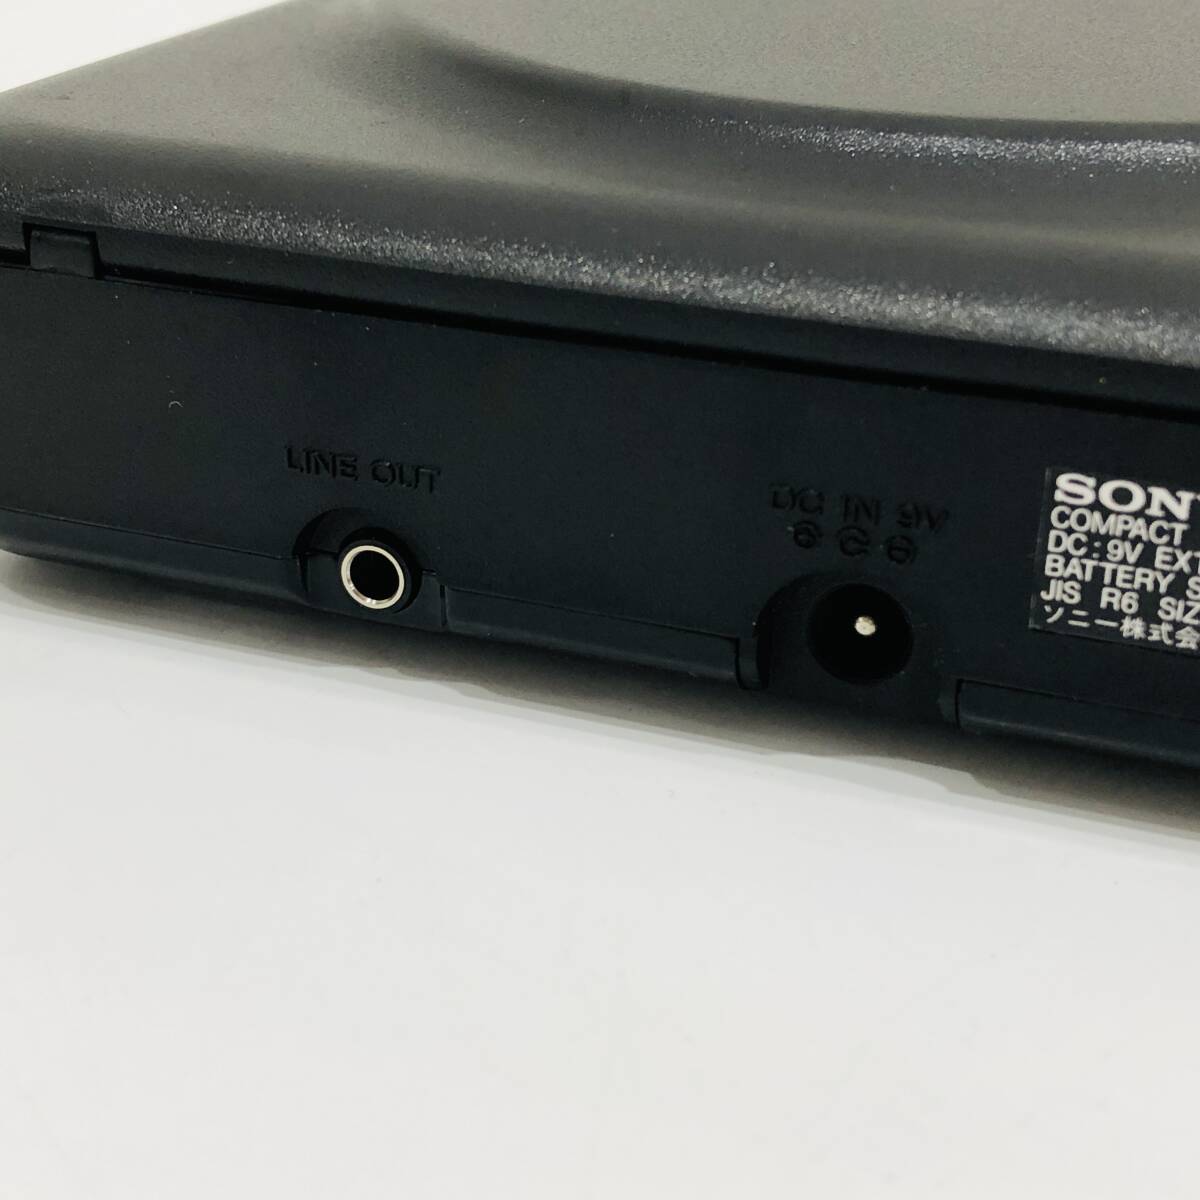 ●ソニー D-20 コンパクトディスクコンパクトプレーヤー SONY ブラック Discman ポータブルCDプレーヤー 音響機器 オーディオ S2843_画像5